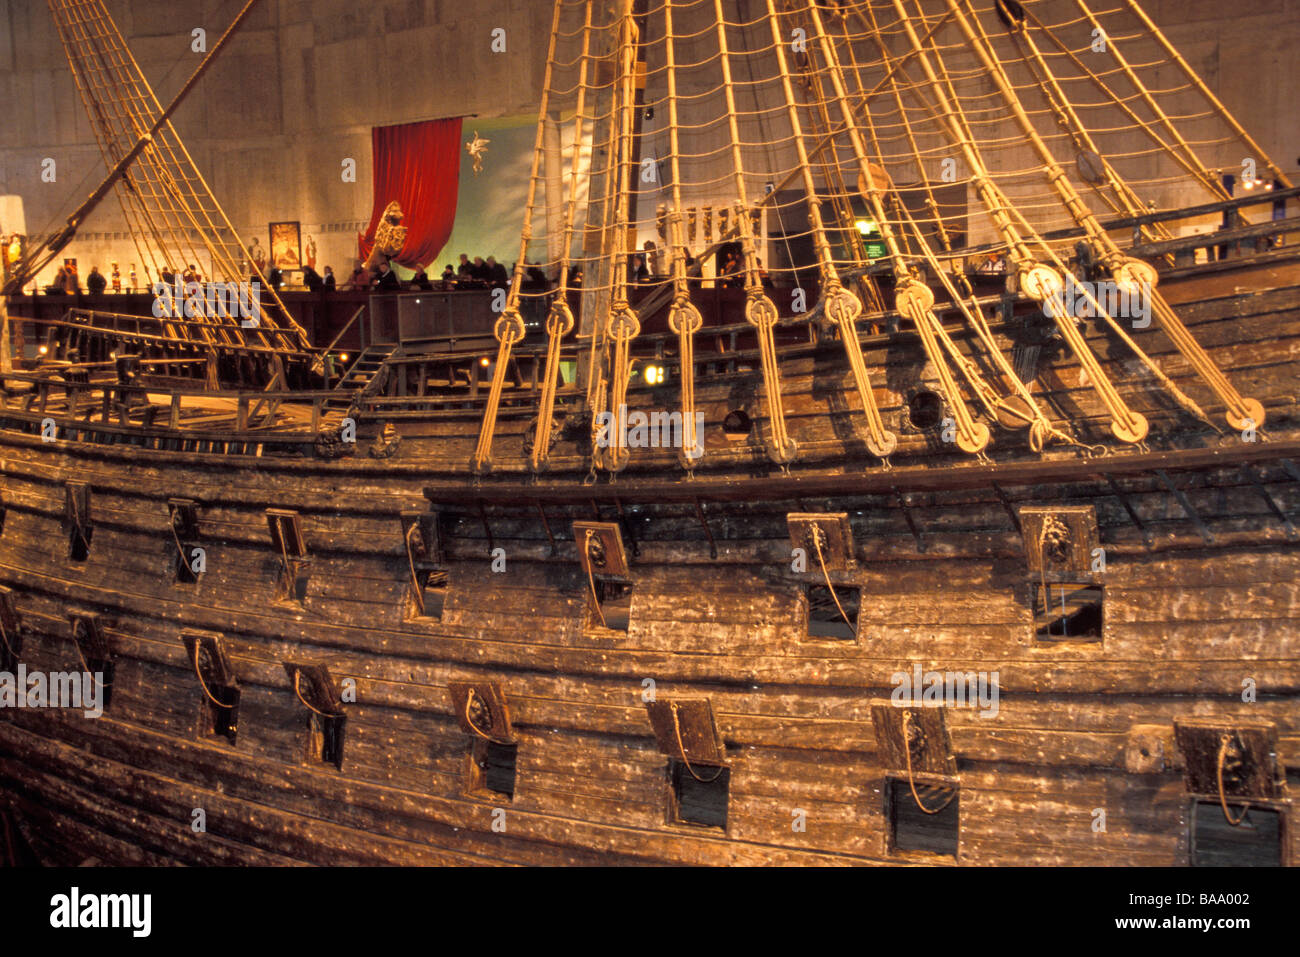 Le fameux galion suédois, Vasa, première série de la voile en 1628. Son voyage, qu'il coule en raison de sa hauteur et l'absence de lest. Banque D'Images